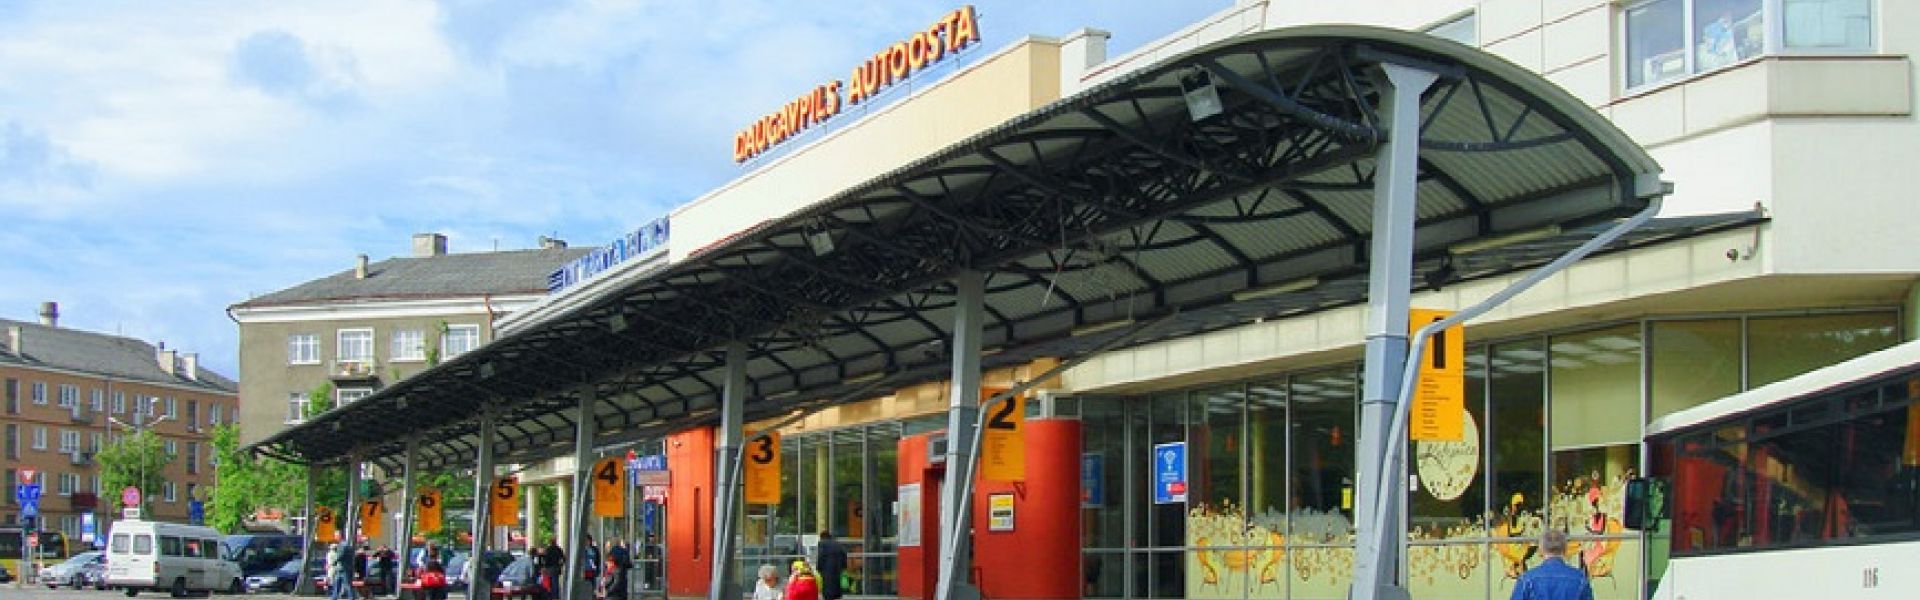 Daugavpils coach terminal